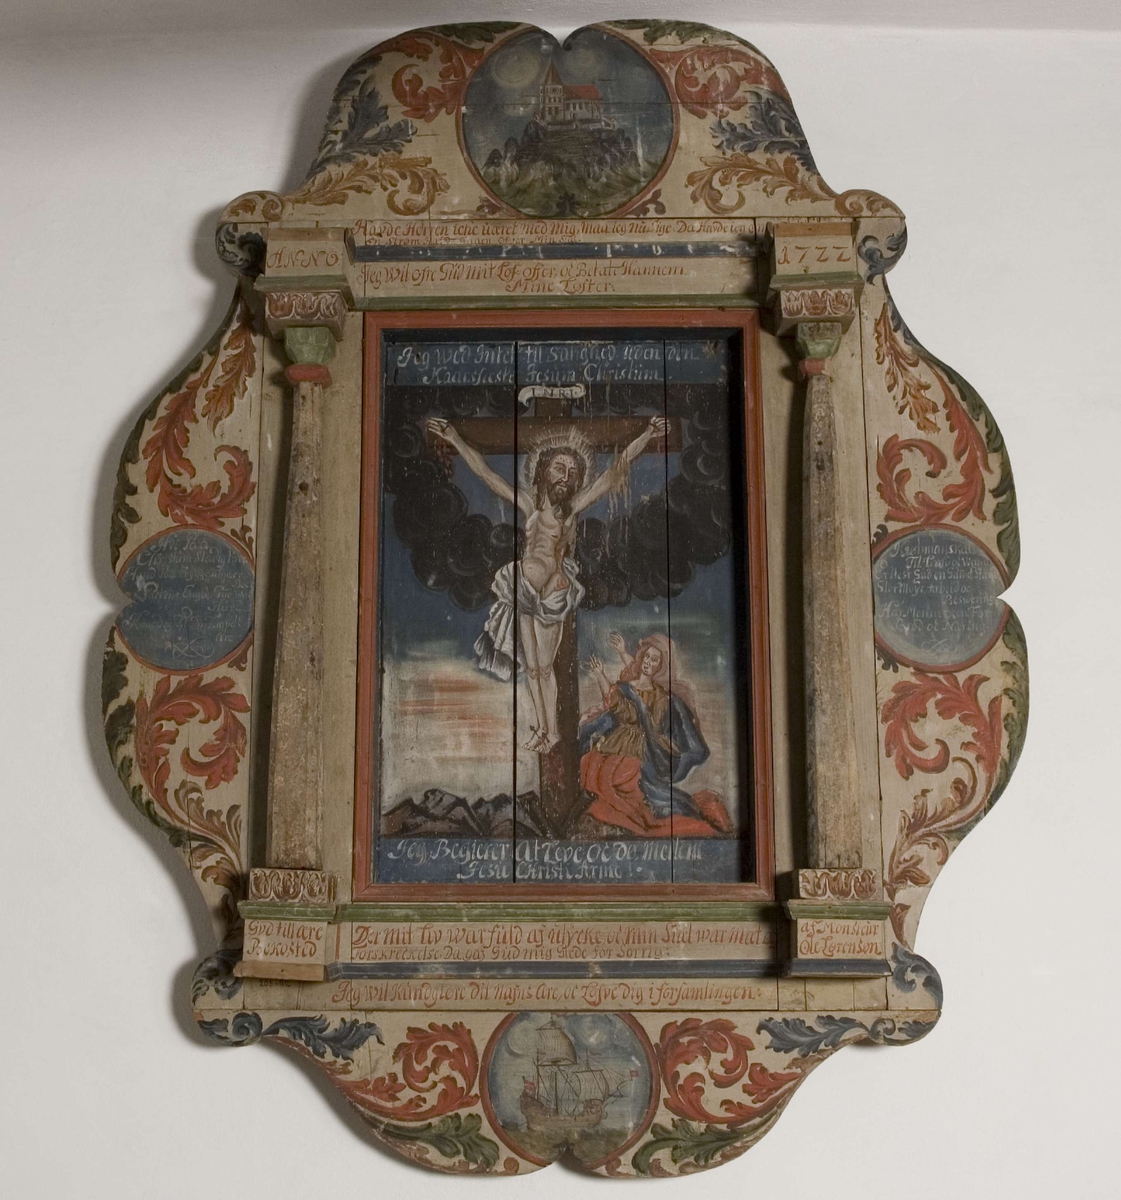 Korsfestelsen. Jesus henger på korset. Maria Magdalena kneler til høyre ved korsets fot. En sort sky omkranser korsets øverste del. Et skip er fremstilt på tavlens nederste del. 